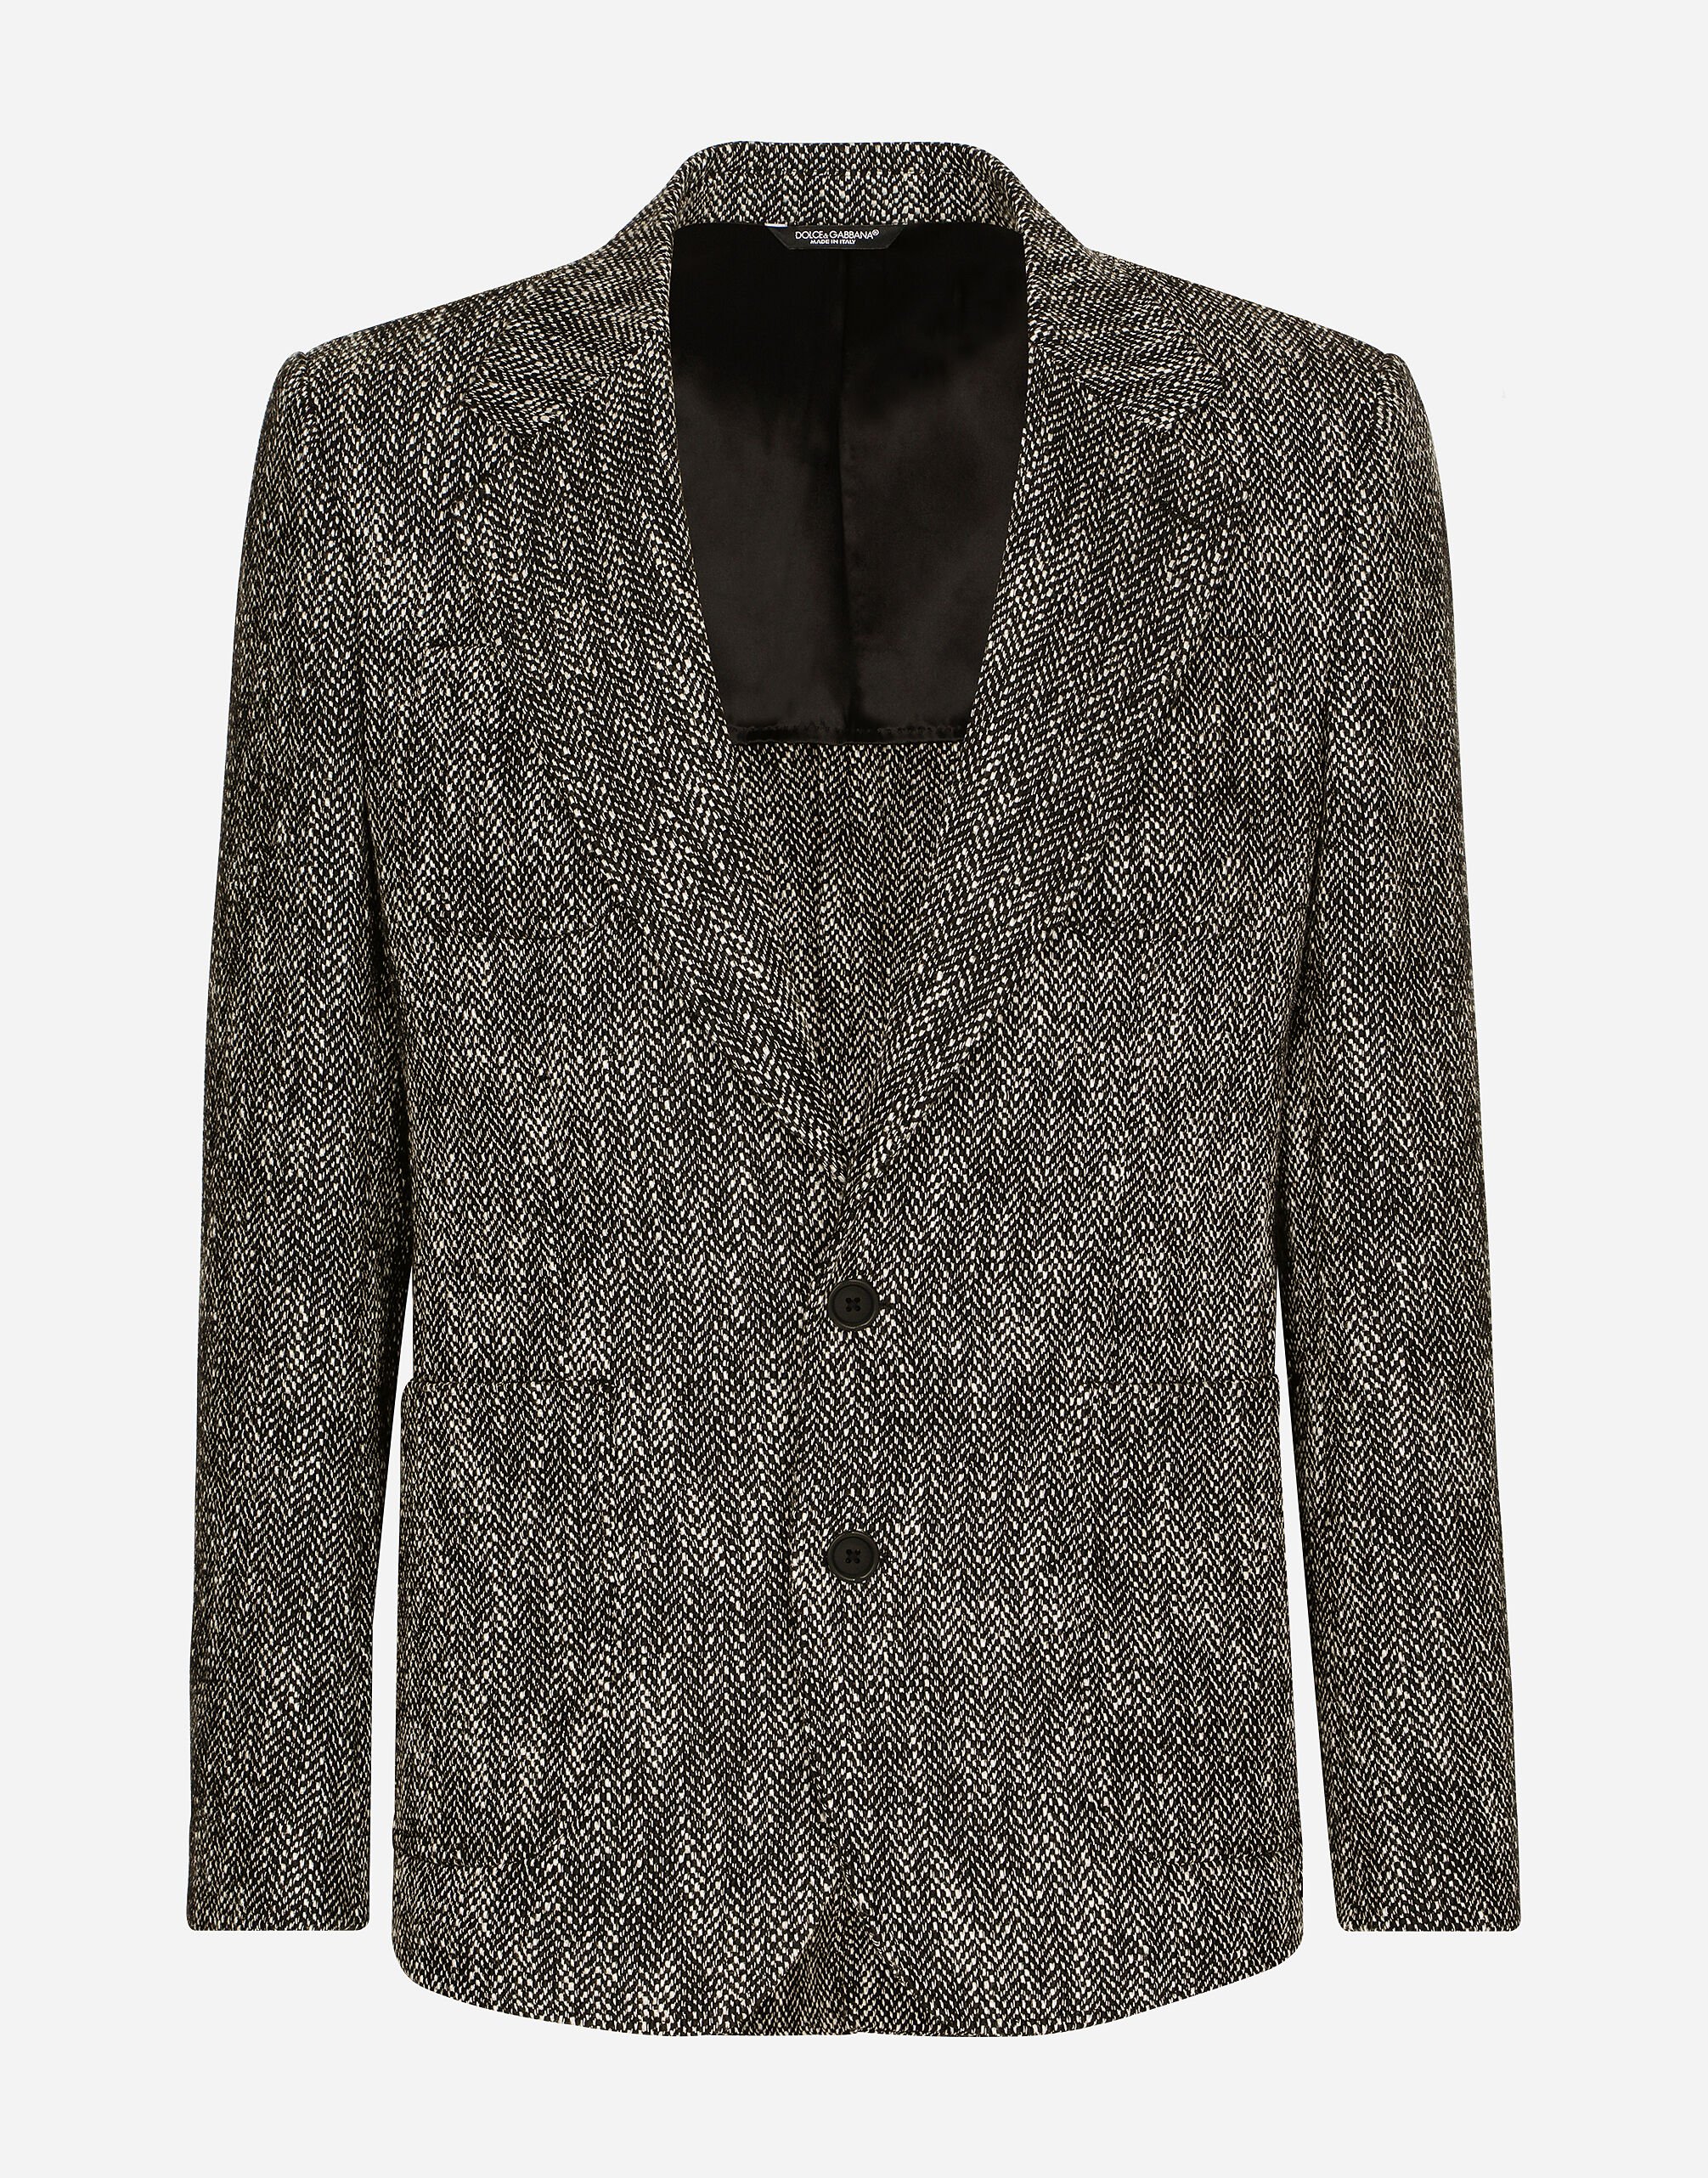 Dolce & Gabbana Single-breasted herringbone cotton and wool tweed jacket White G2NW1TFU4DV